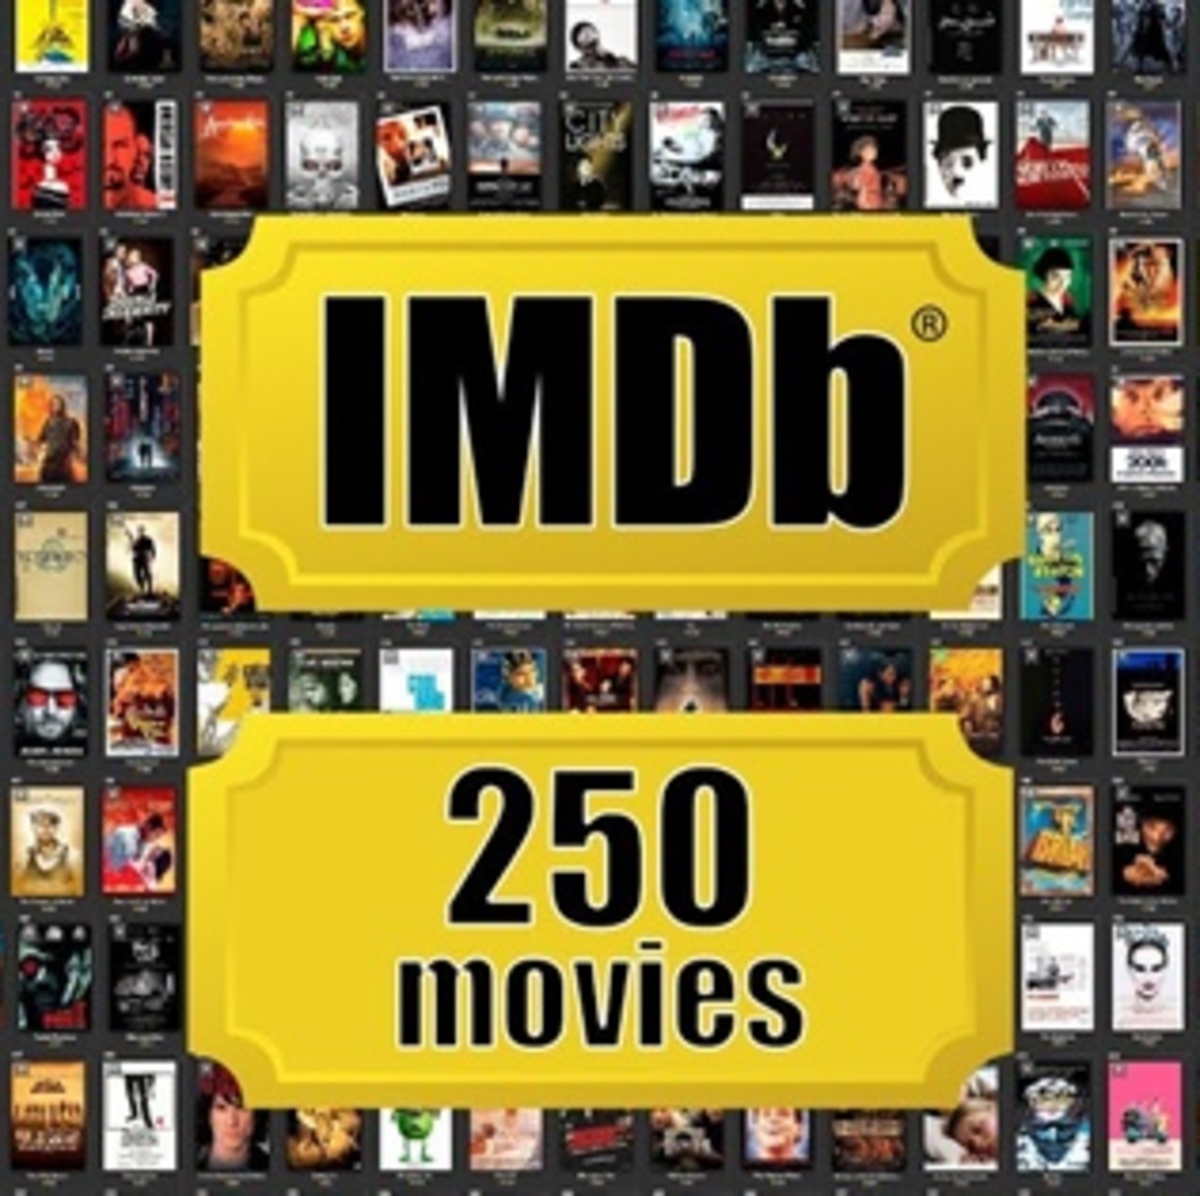 IMDB-Top1000-Movies/IMDB-Movie-Data.csv at master · peetck/IMDB-Top1000-Movies  · GitHub